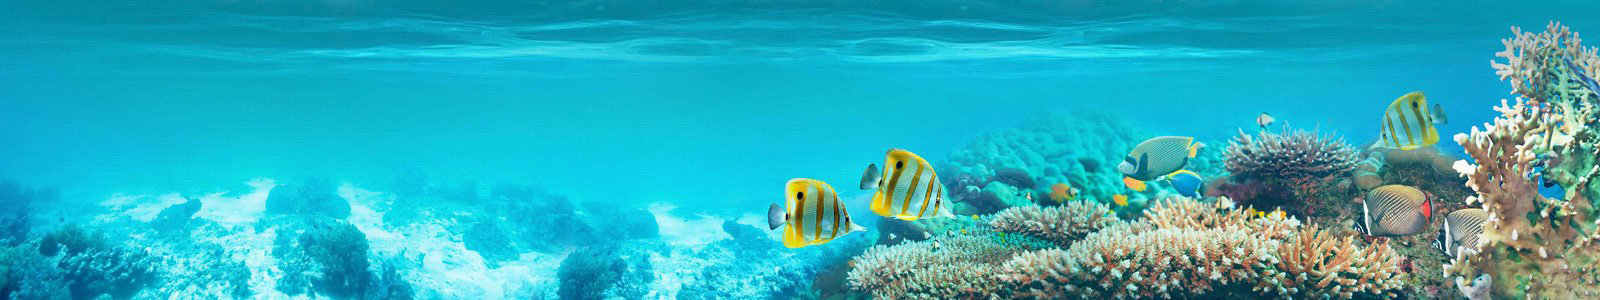 №6311 - Рыбки и кораллы под водой